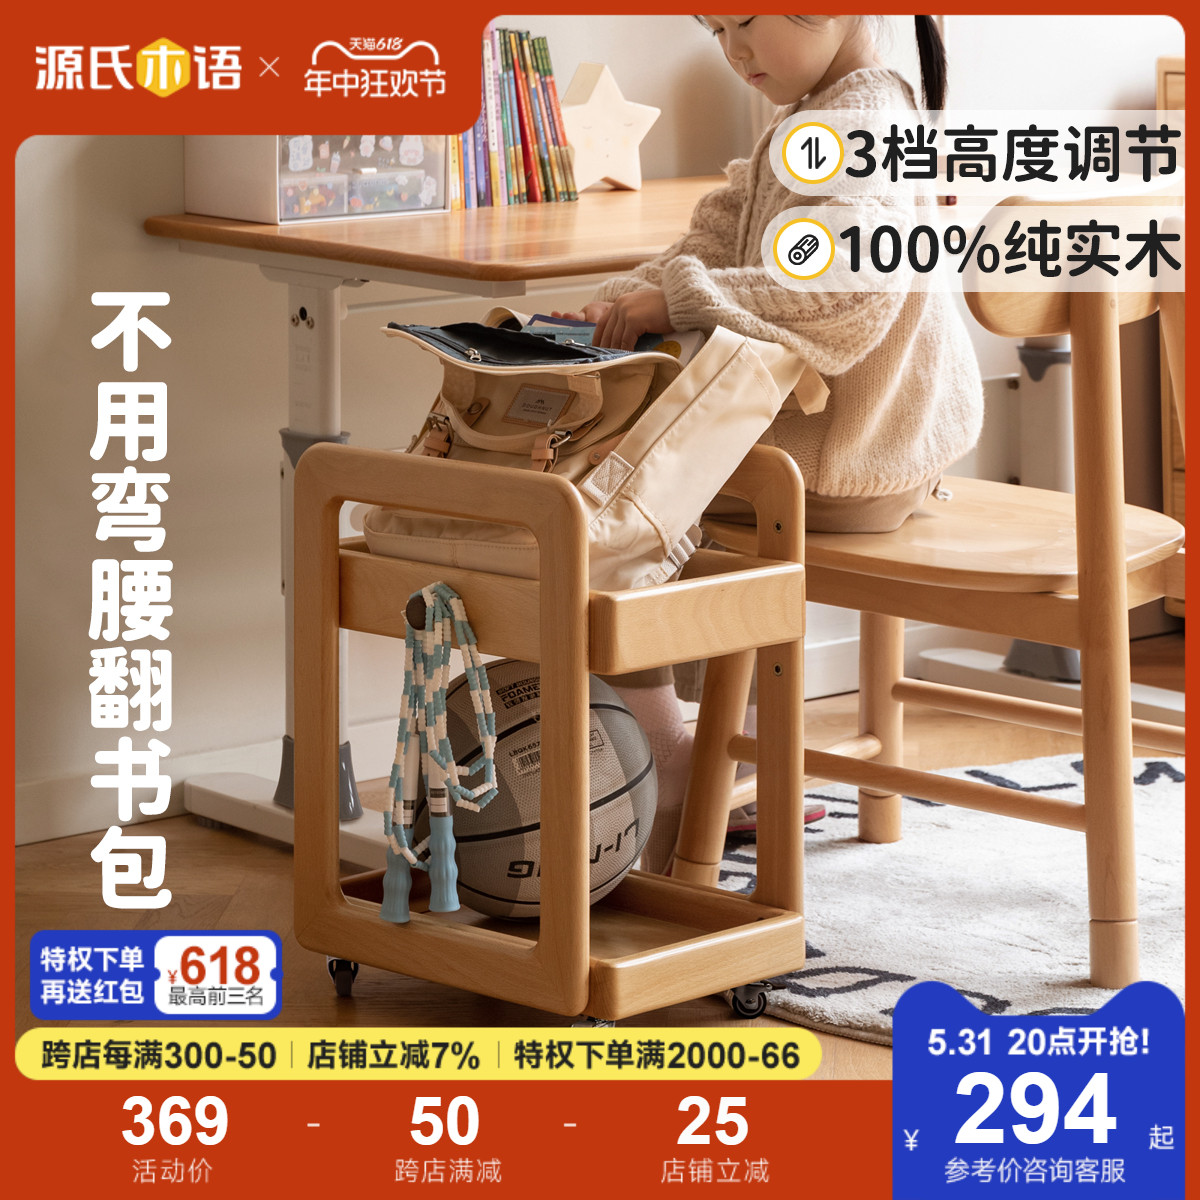 源氏木语儿童实木书架现代简约可移动置物架桌下推车储物架书包架